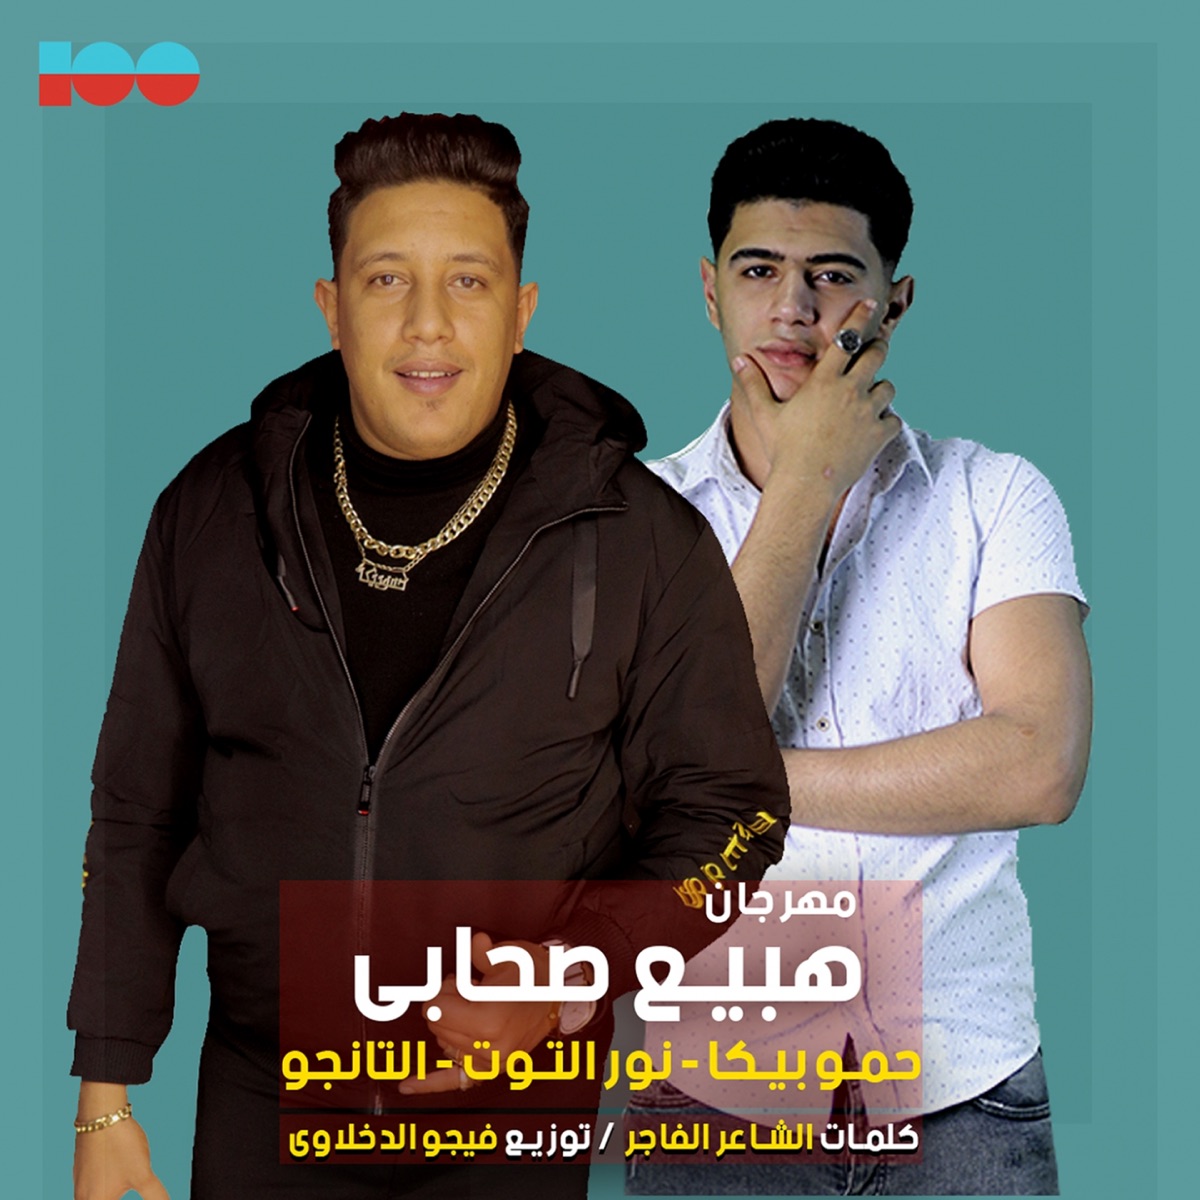 حبس انفرادى – Album par نور التوت, Hamo Bika & Mody Amin – Apple Music